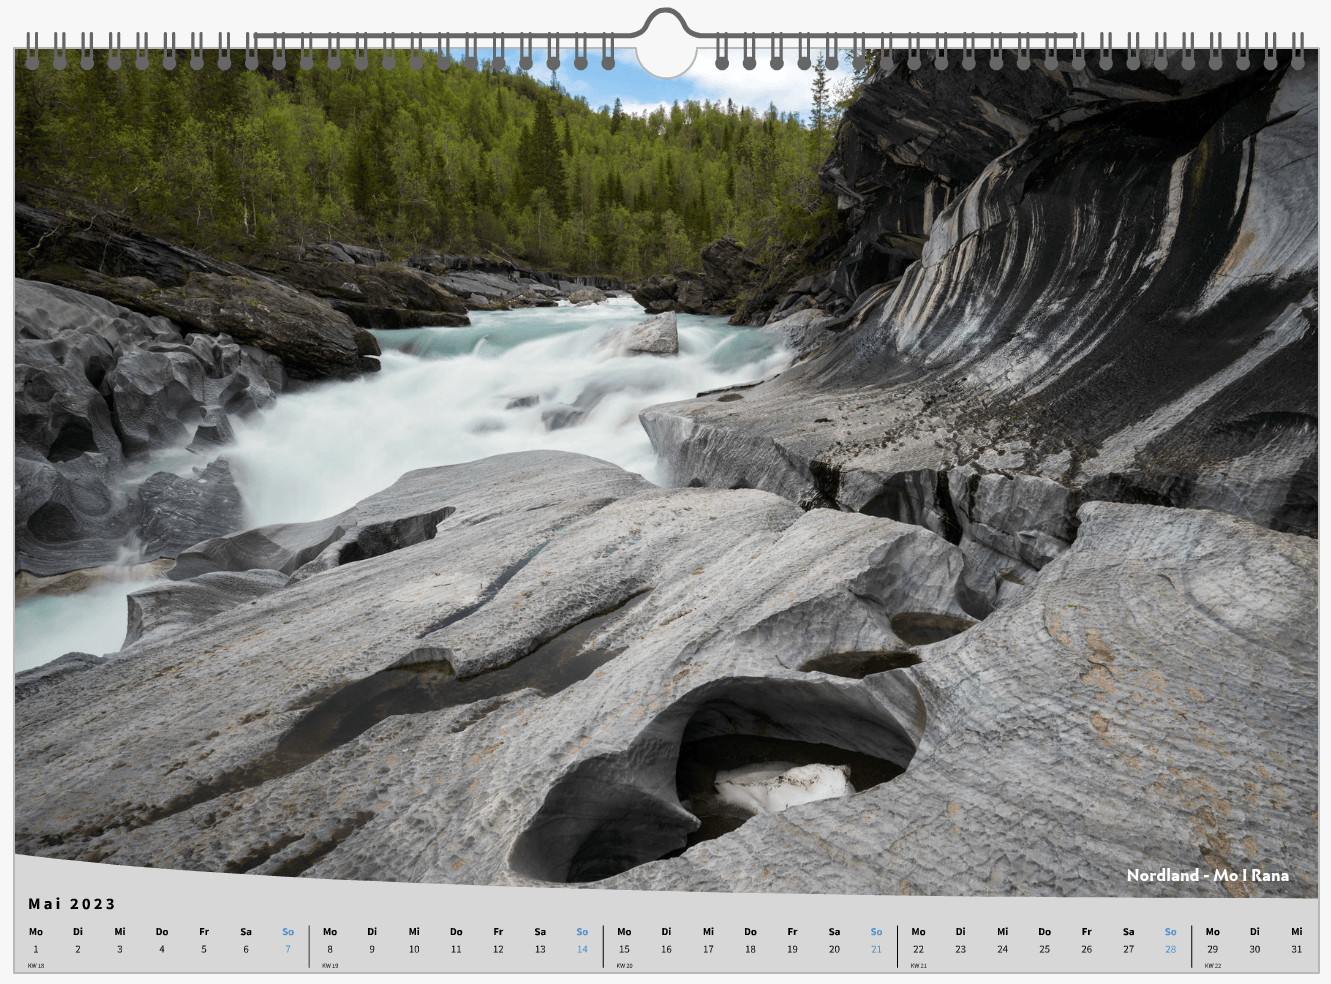 Kalender Norwegen 2023 durch Gletscherfluss geformte Felsen